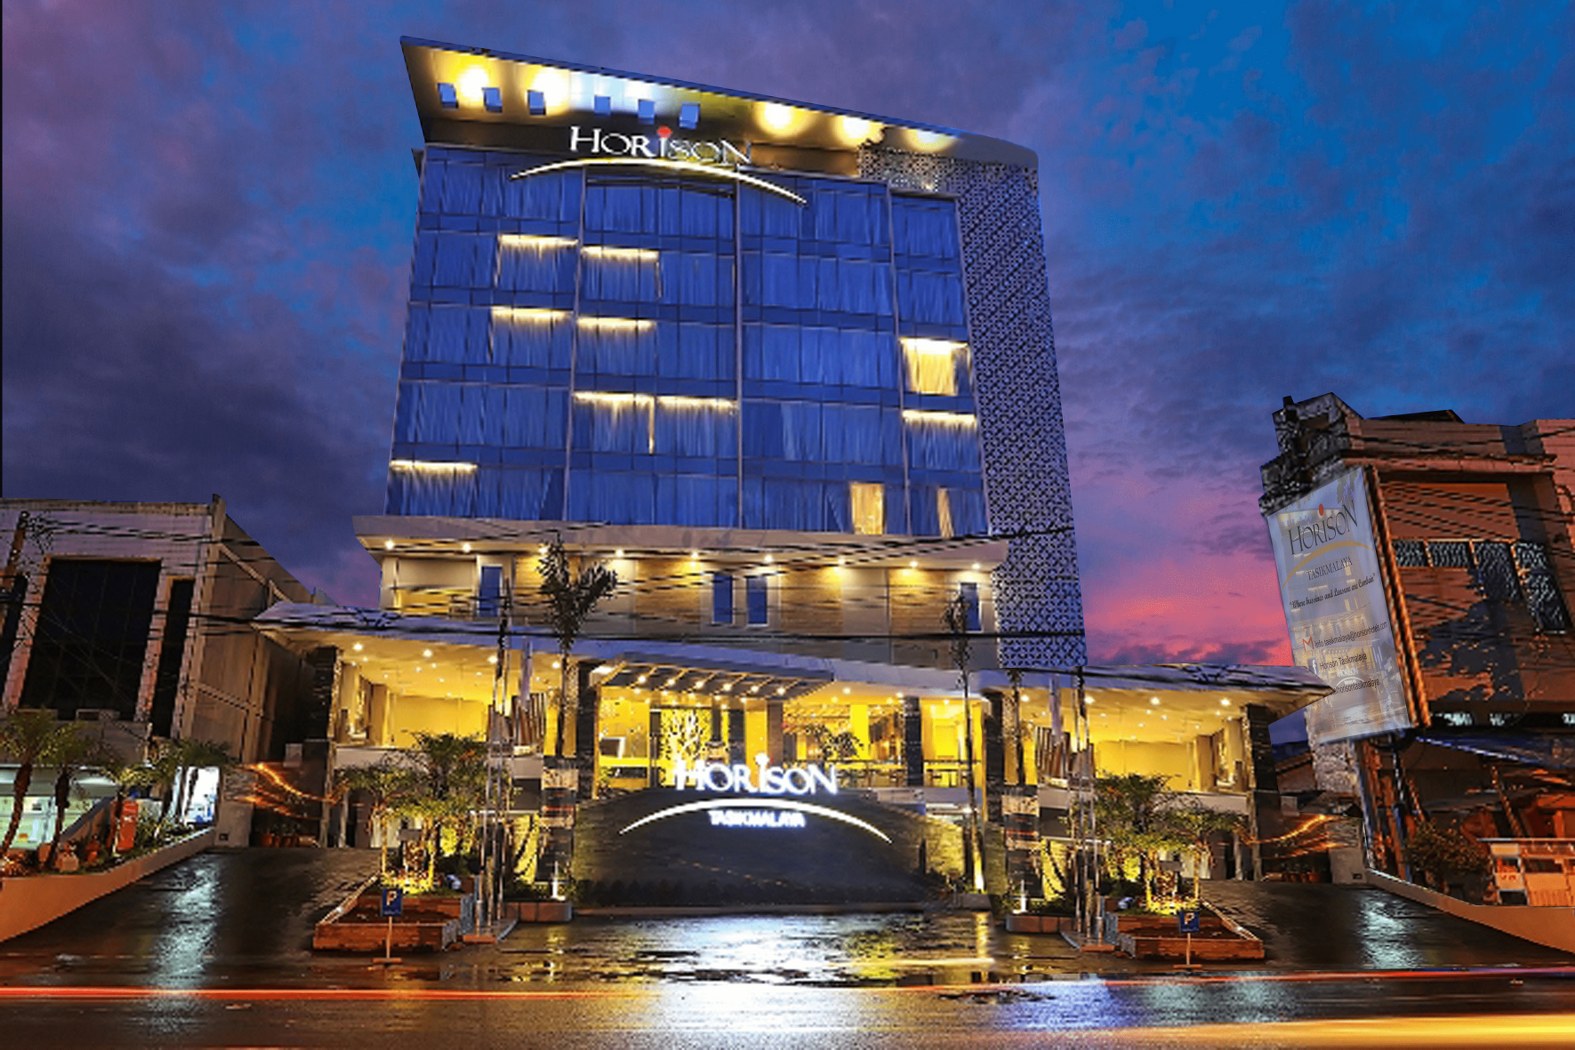 Horrson Hotel, Kota Tasikmalaya